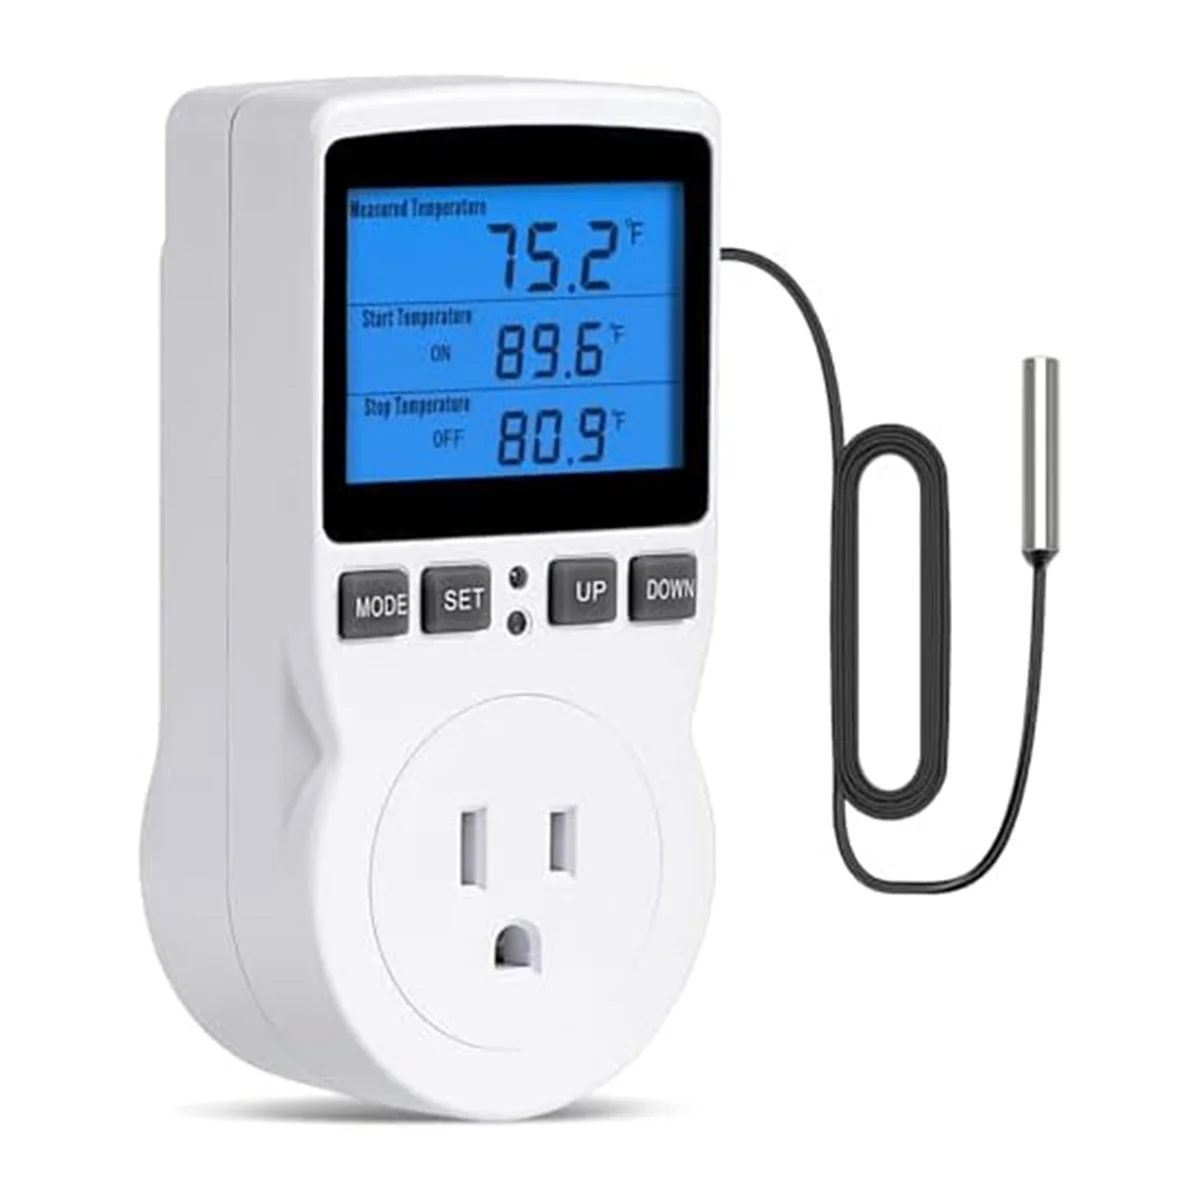 

Подключаемый термостат с контроллером температуры, таймер управления нагревом и охлаждением, 1800 Вт, 110 В, 15 А, дисплей с подсветкой, вилка стандарта США